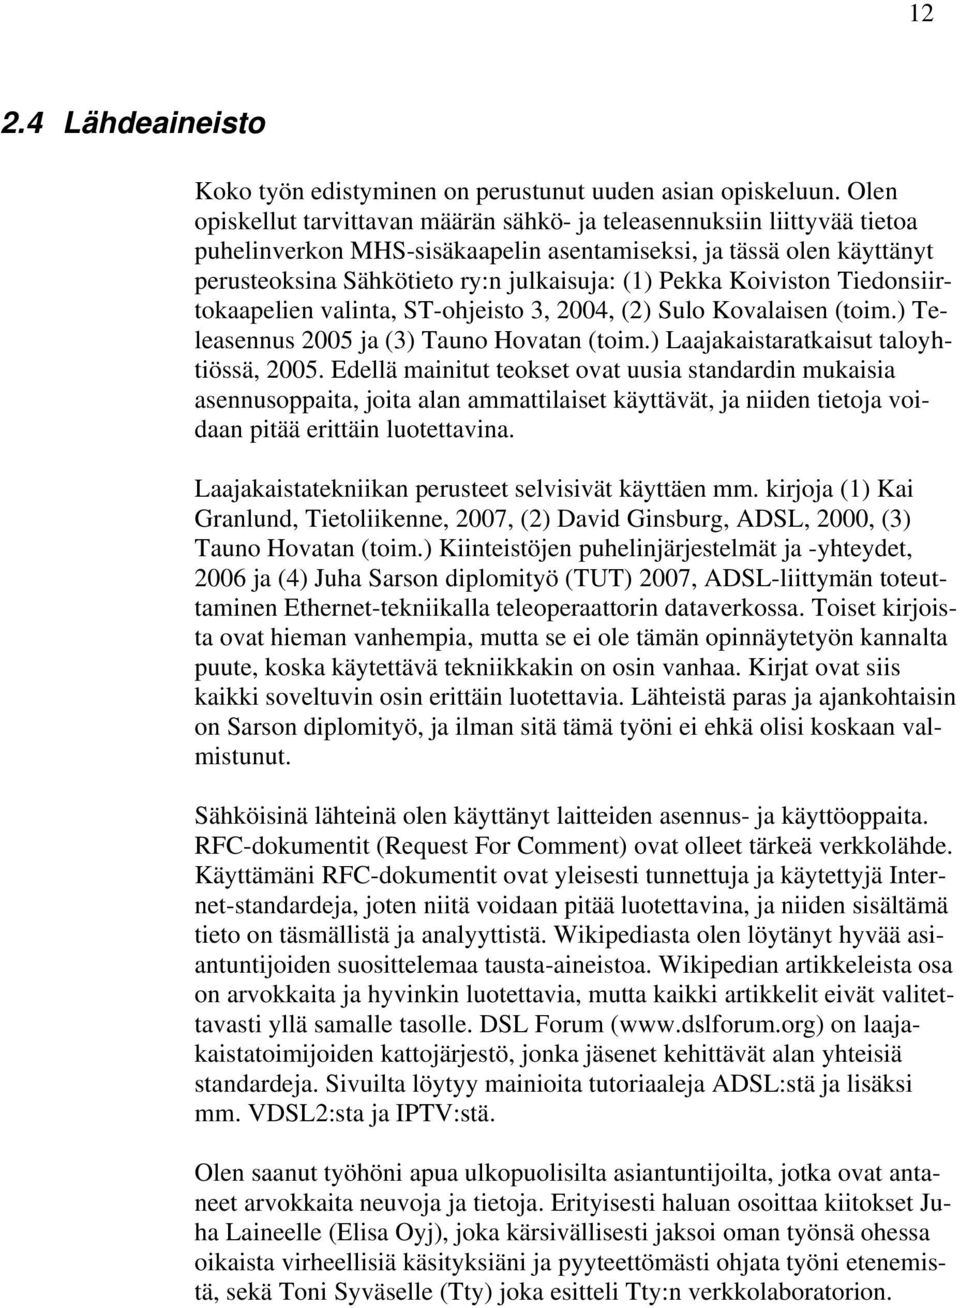 Koiviston Tiedonsiirtokaapelien valinta, ST-ohjeisto 3, 2004, (2) Sulo Kovalaisen (toim.) Teleasennus 2005 ja (3) Tauno Hovatan (toim.) Laajakaistaratkaisut taloyhtiössä, 2005.